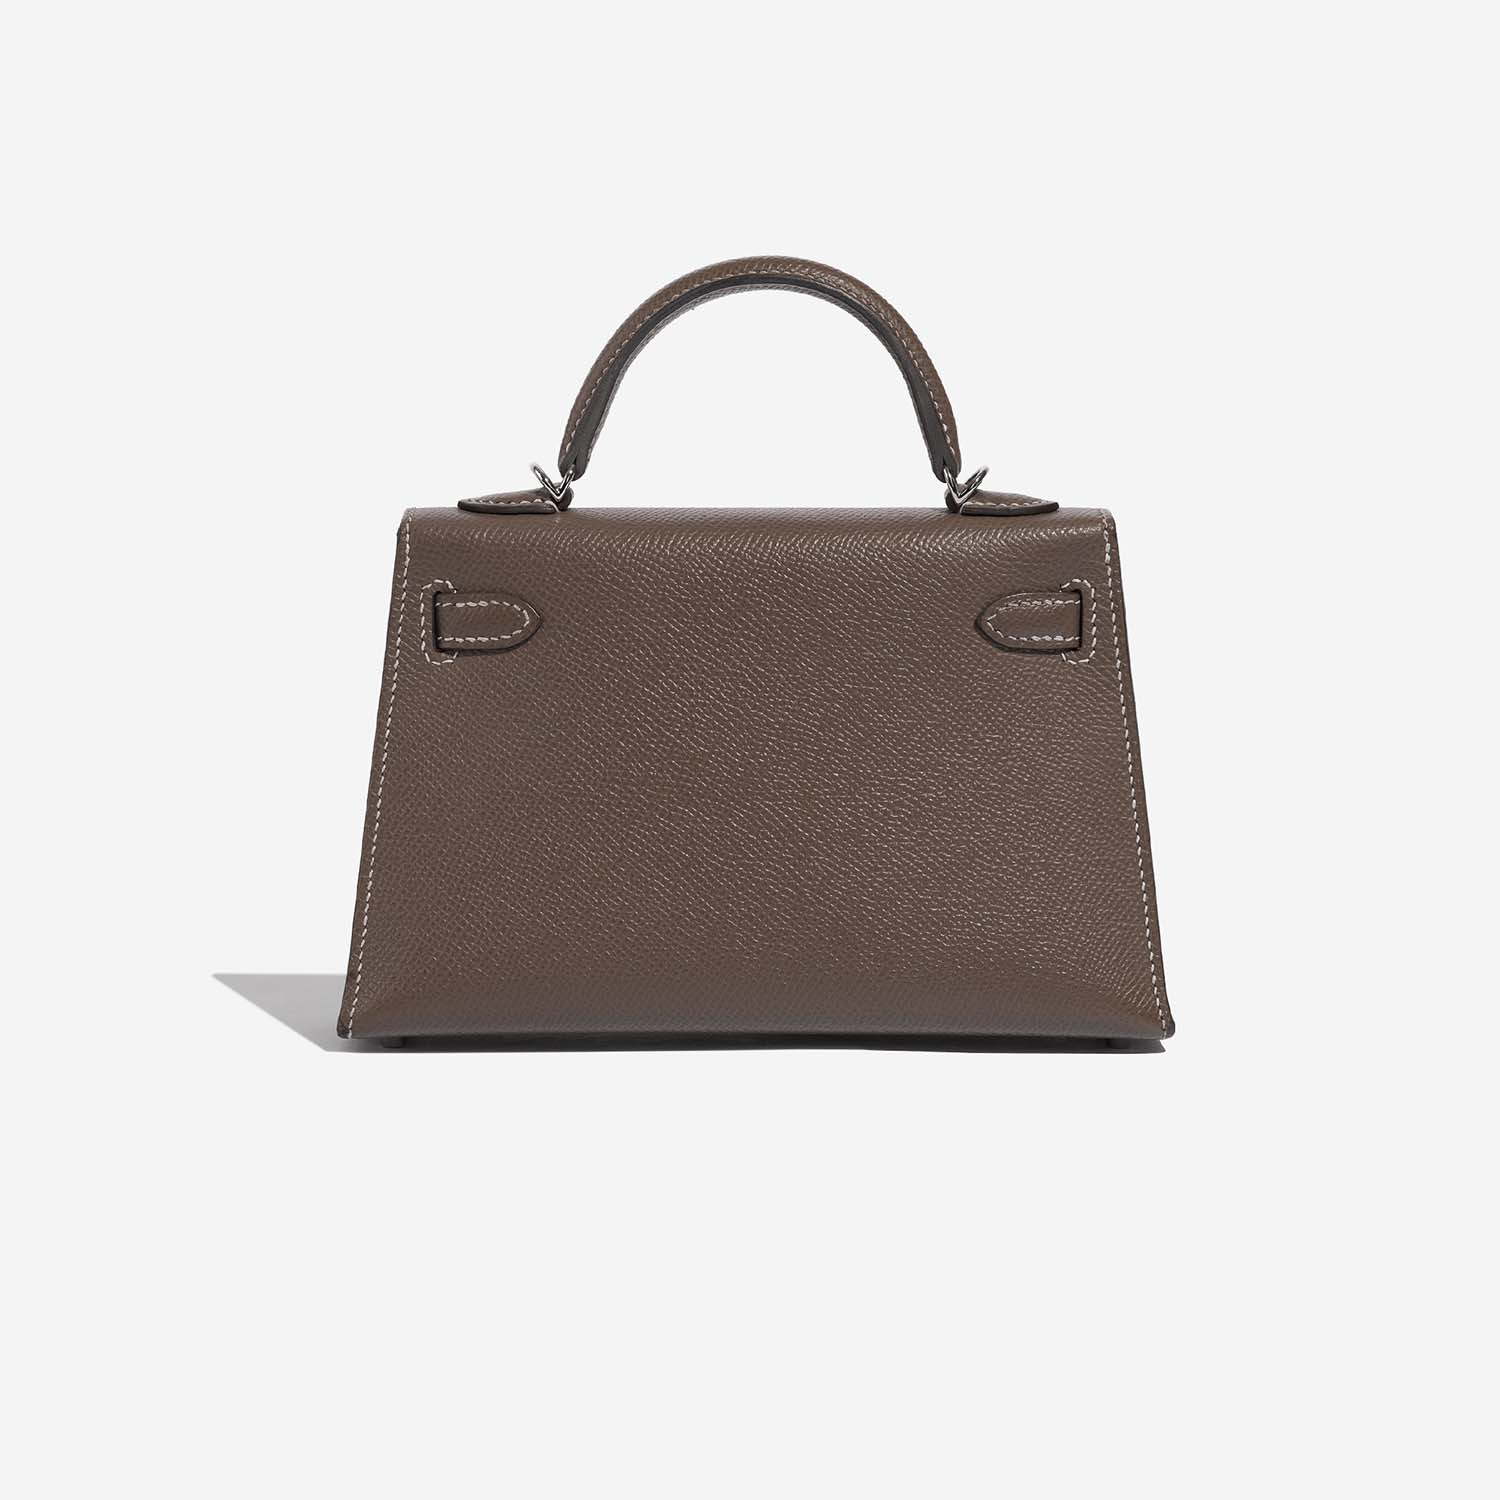 Hermès Kelly Mini Etoupe Back | Verkaufen Sie Ihre Designertasche auf Saclab.com